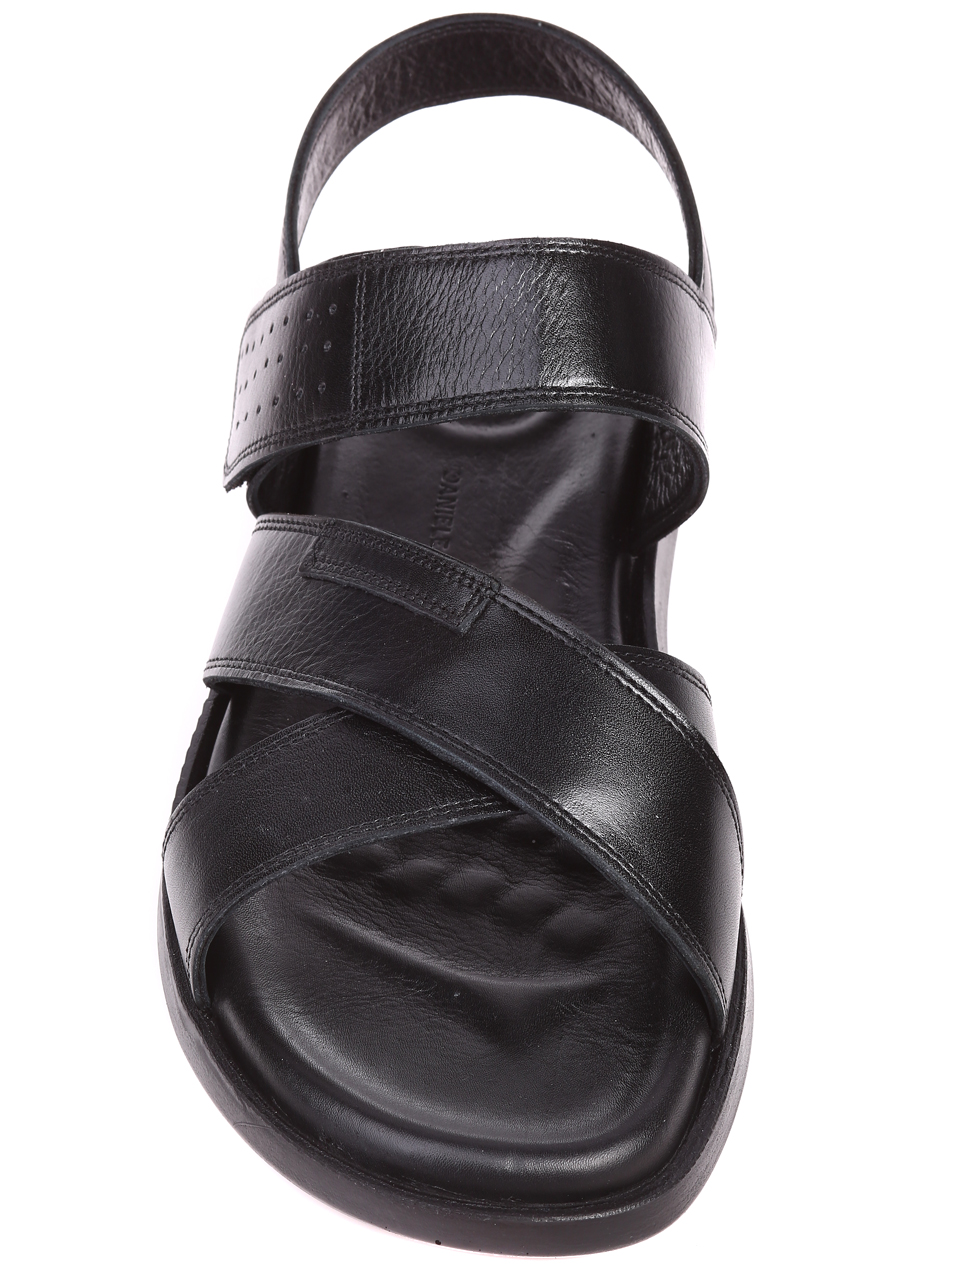 Ежедневни мъжки сандали от естествена кожа 8AT-21335 black